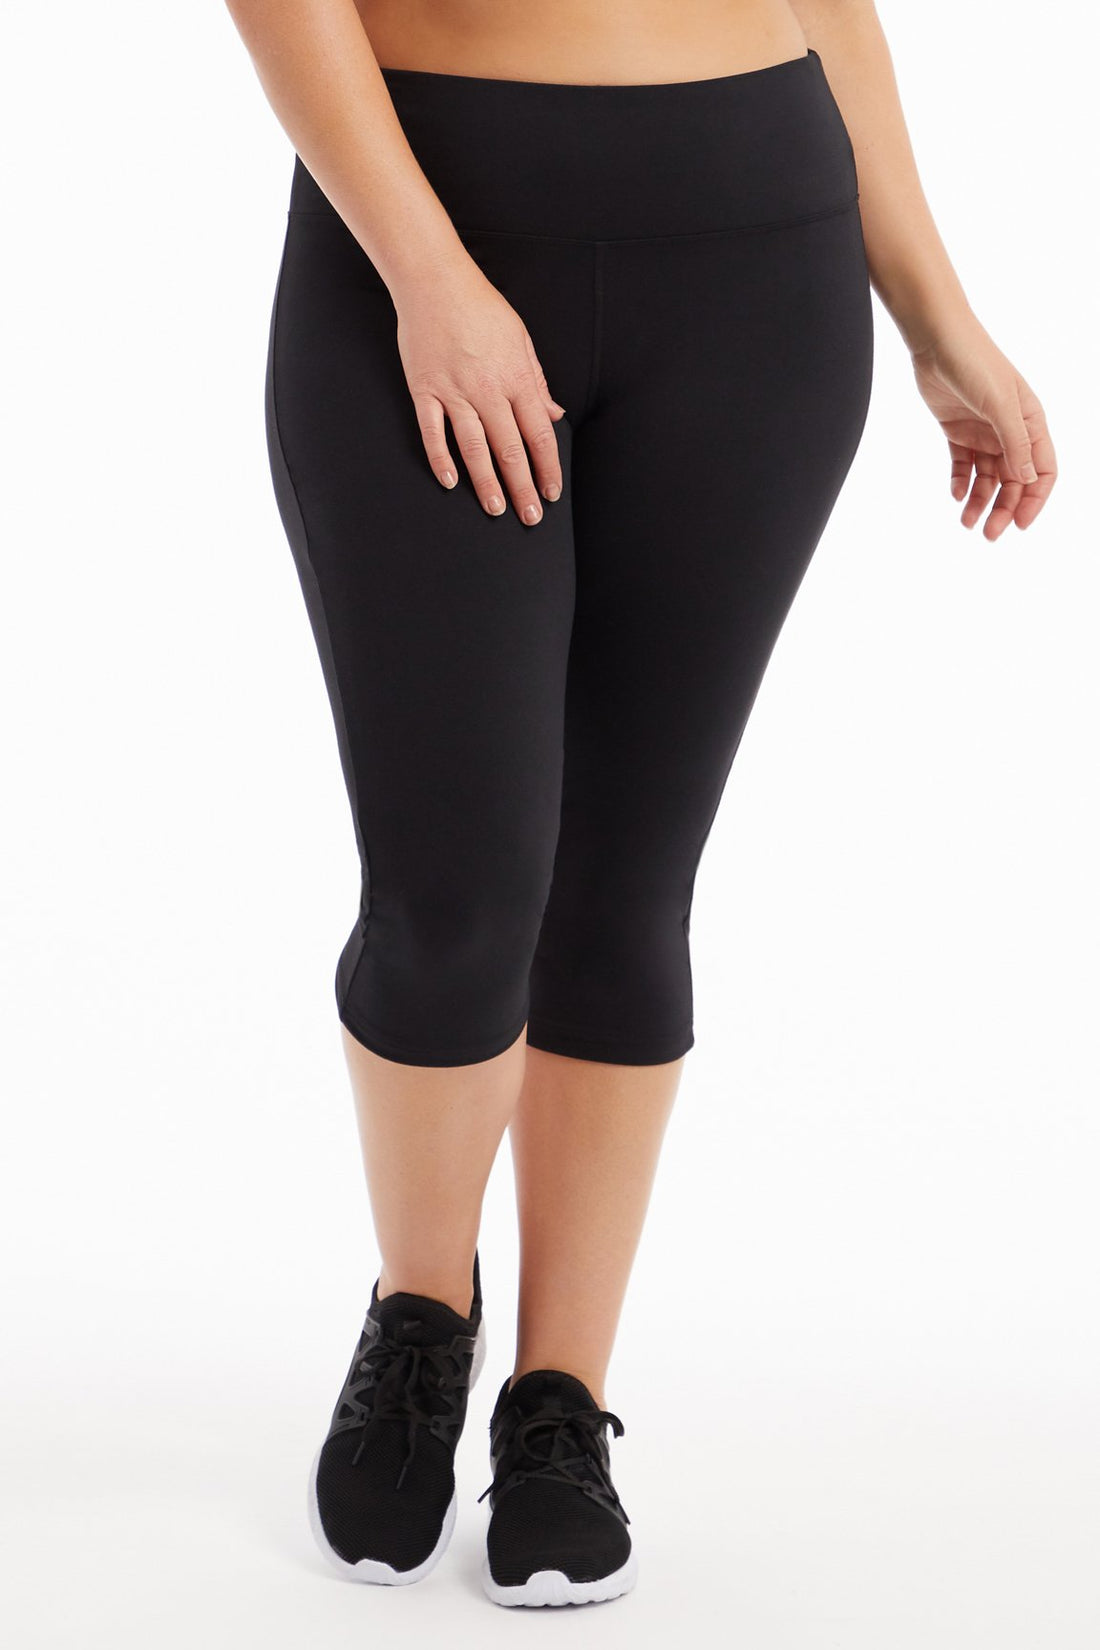 Plus Womens MTA Sport Exercise Capri Leggings Pants Size 3X High